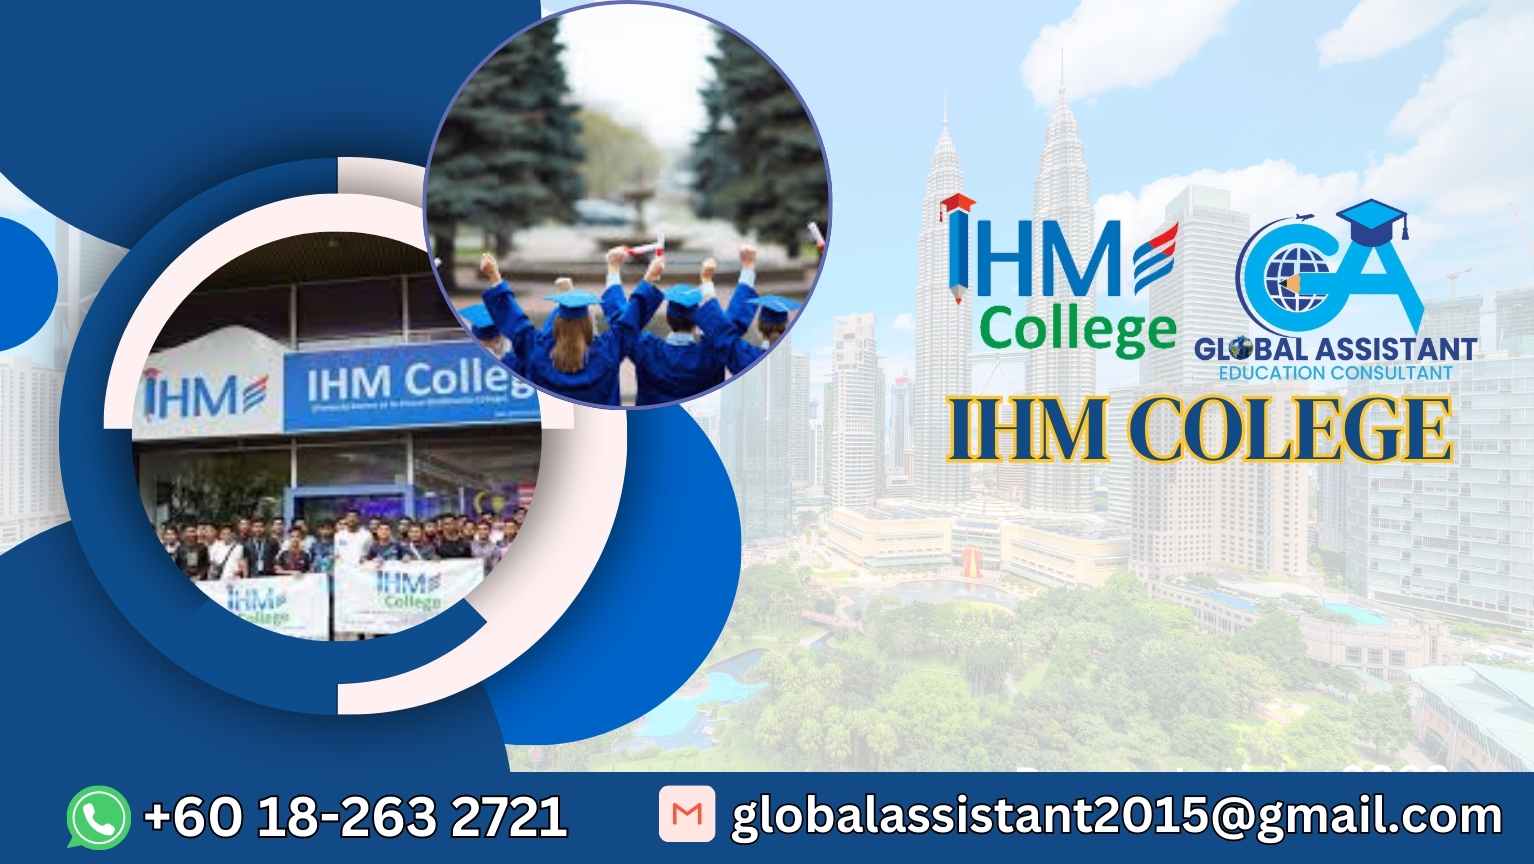 IHM College Malaysia